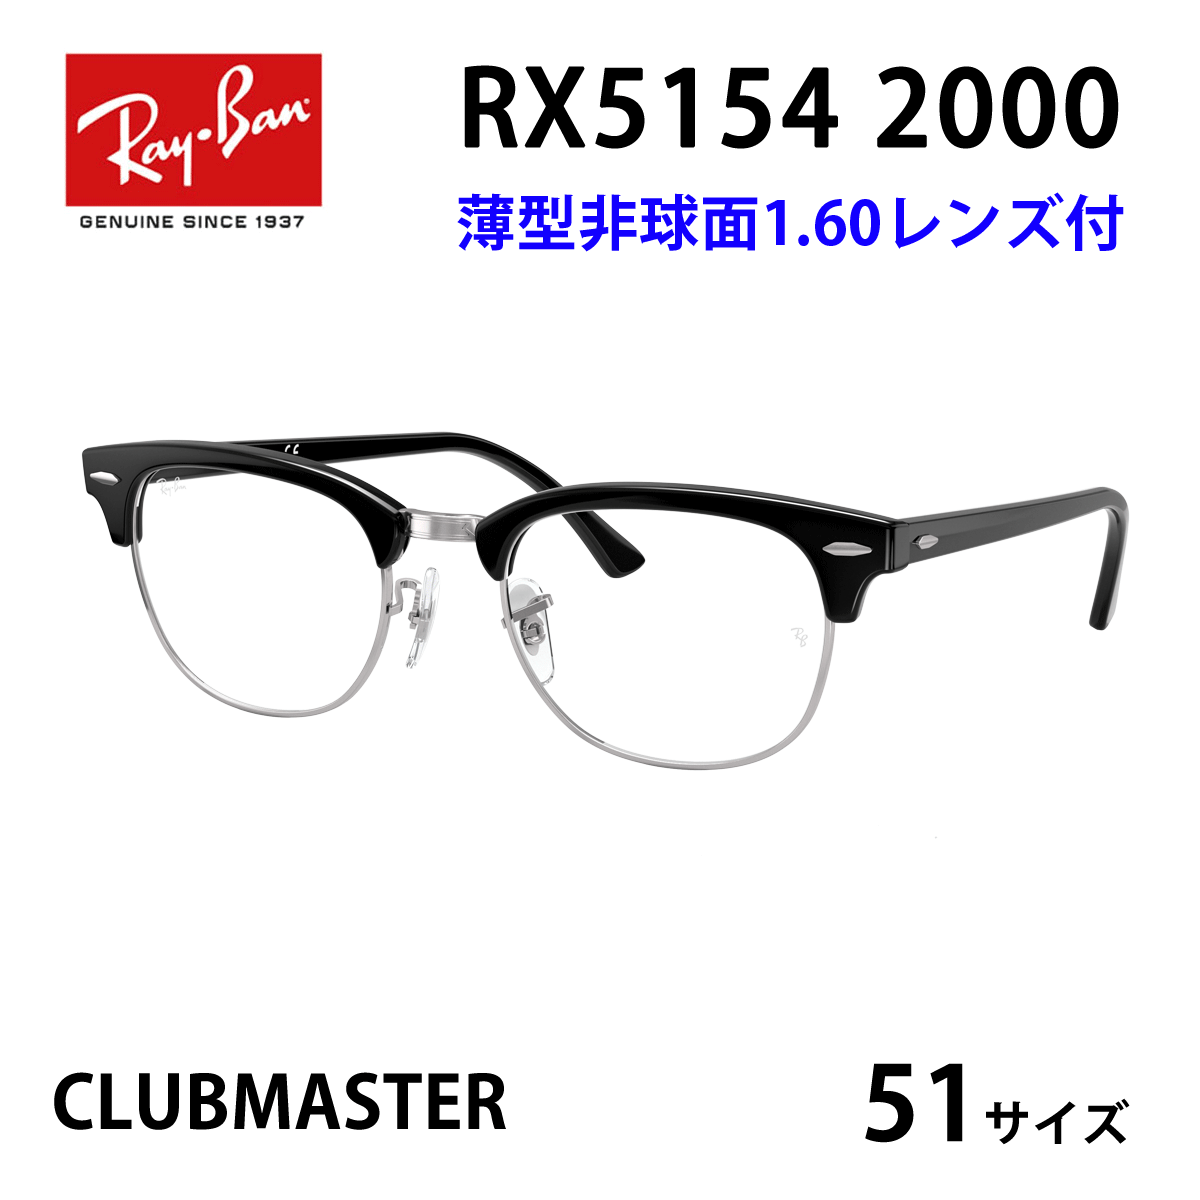 新品正規品 レイバン RX/RB5154 2000 クラブマスター ブルーライト-